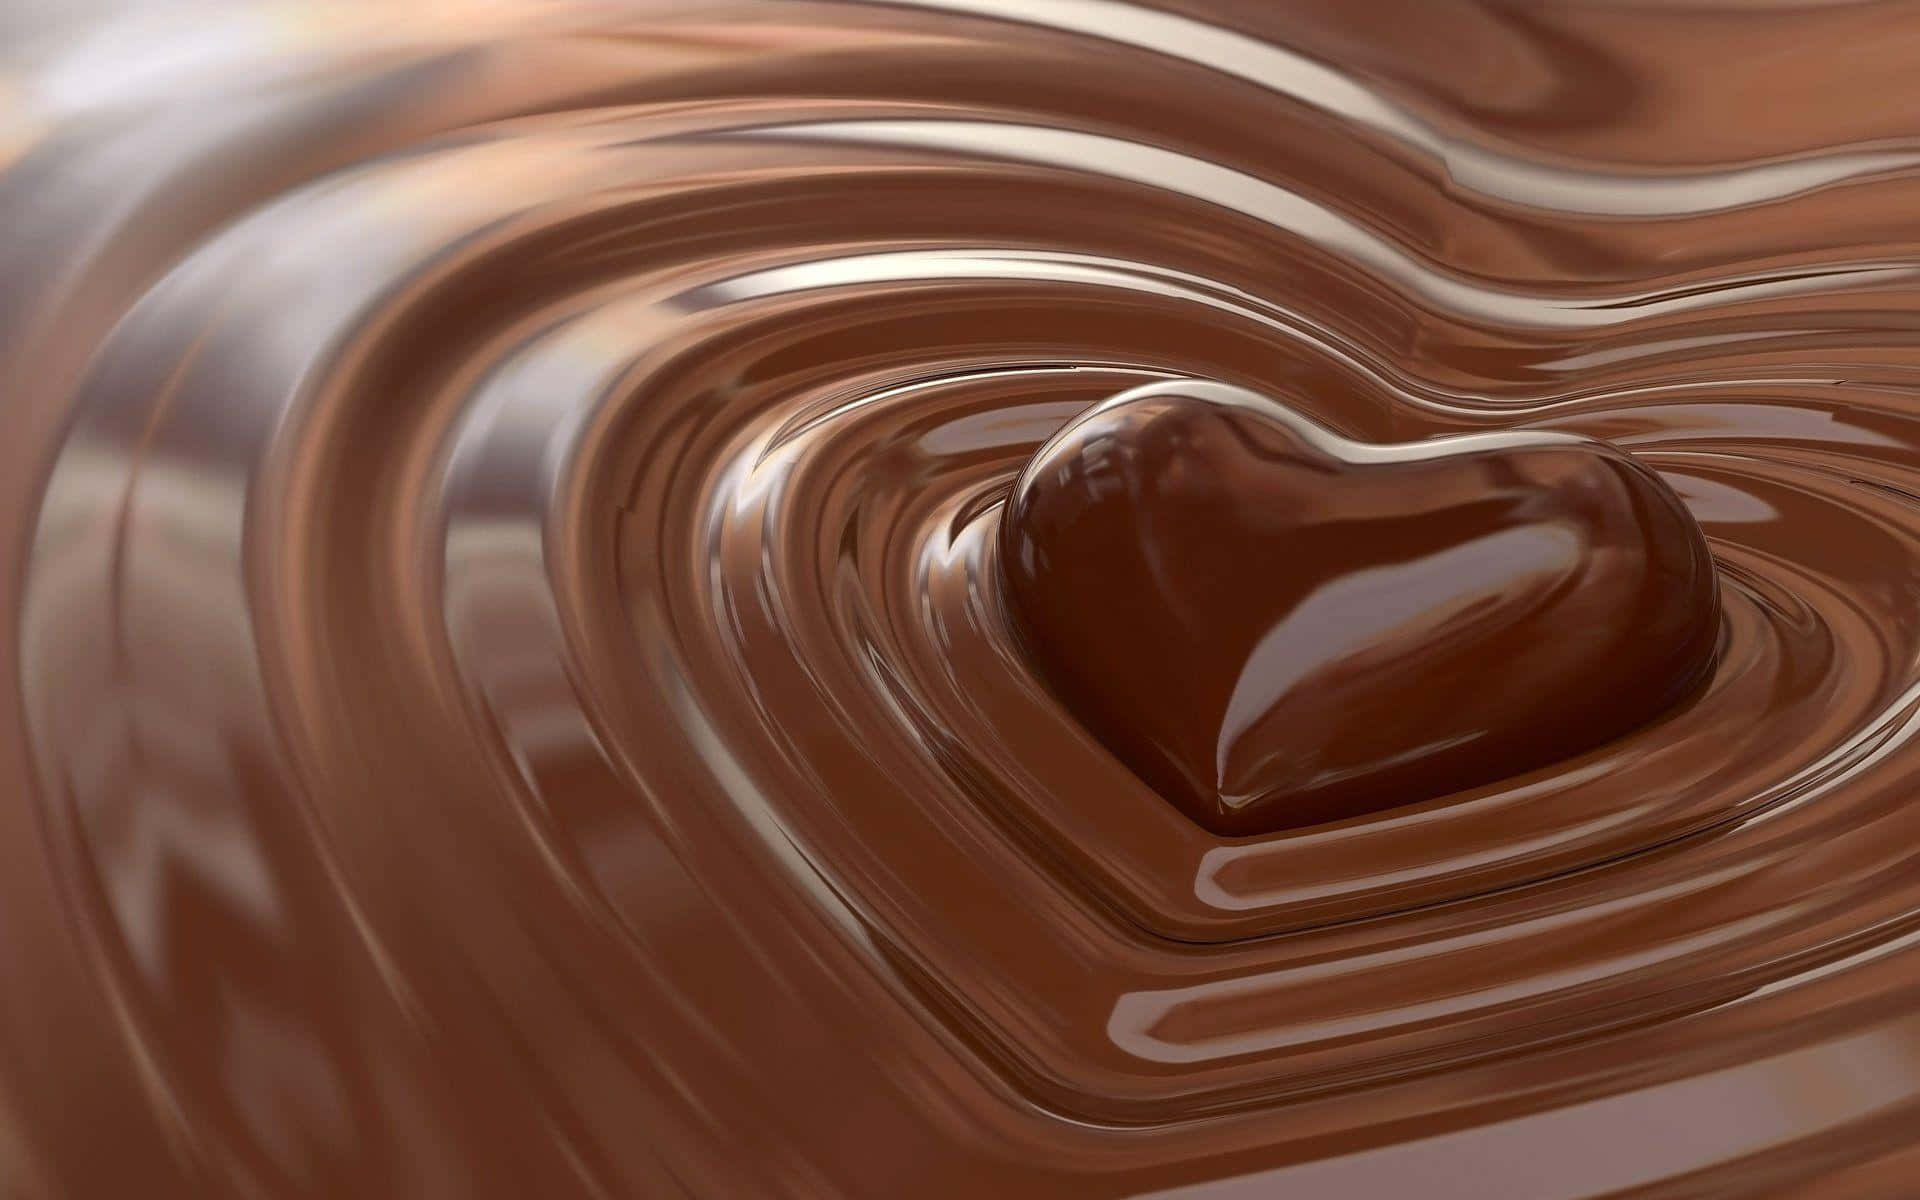 Rigog Overdådig Lækkerhed I Form Af Chokolade.